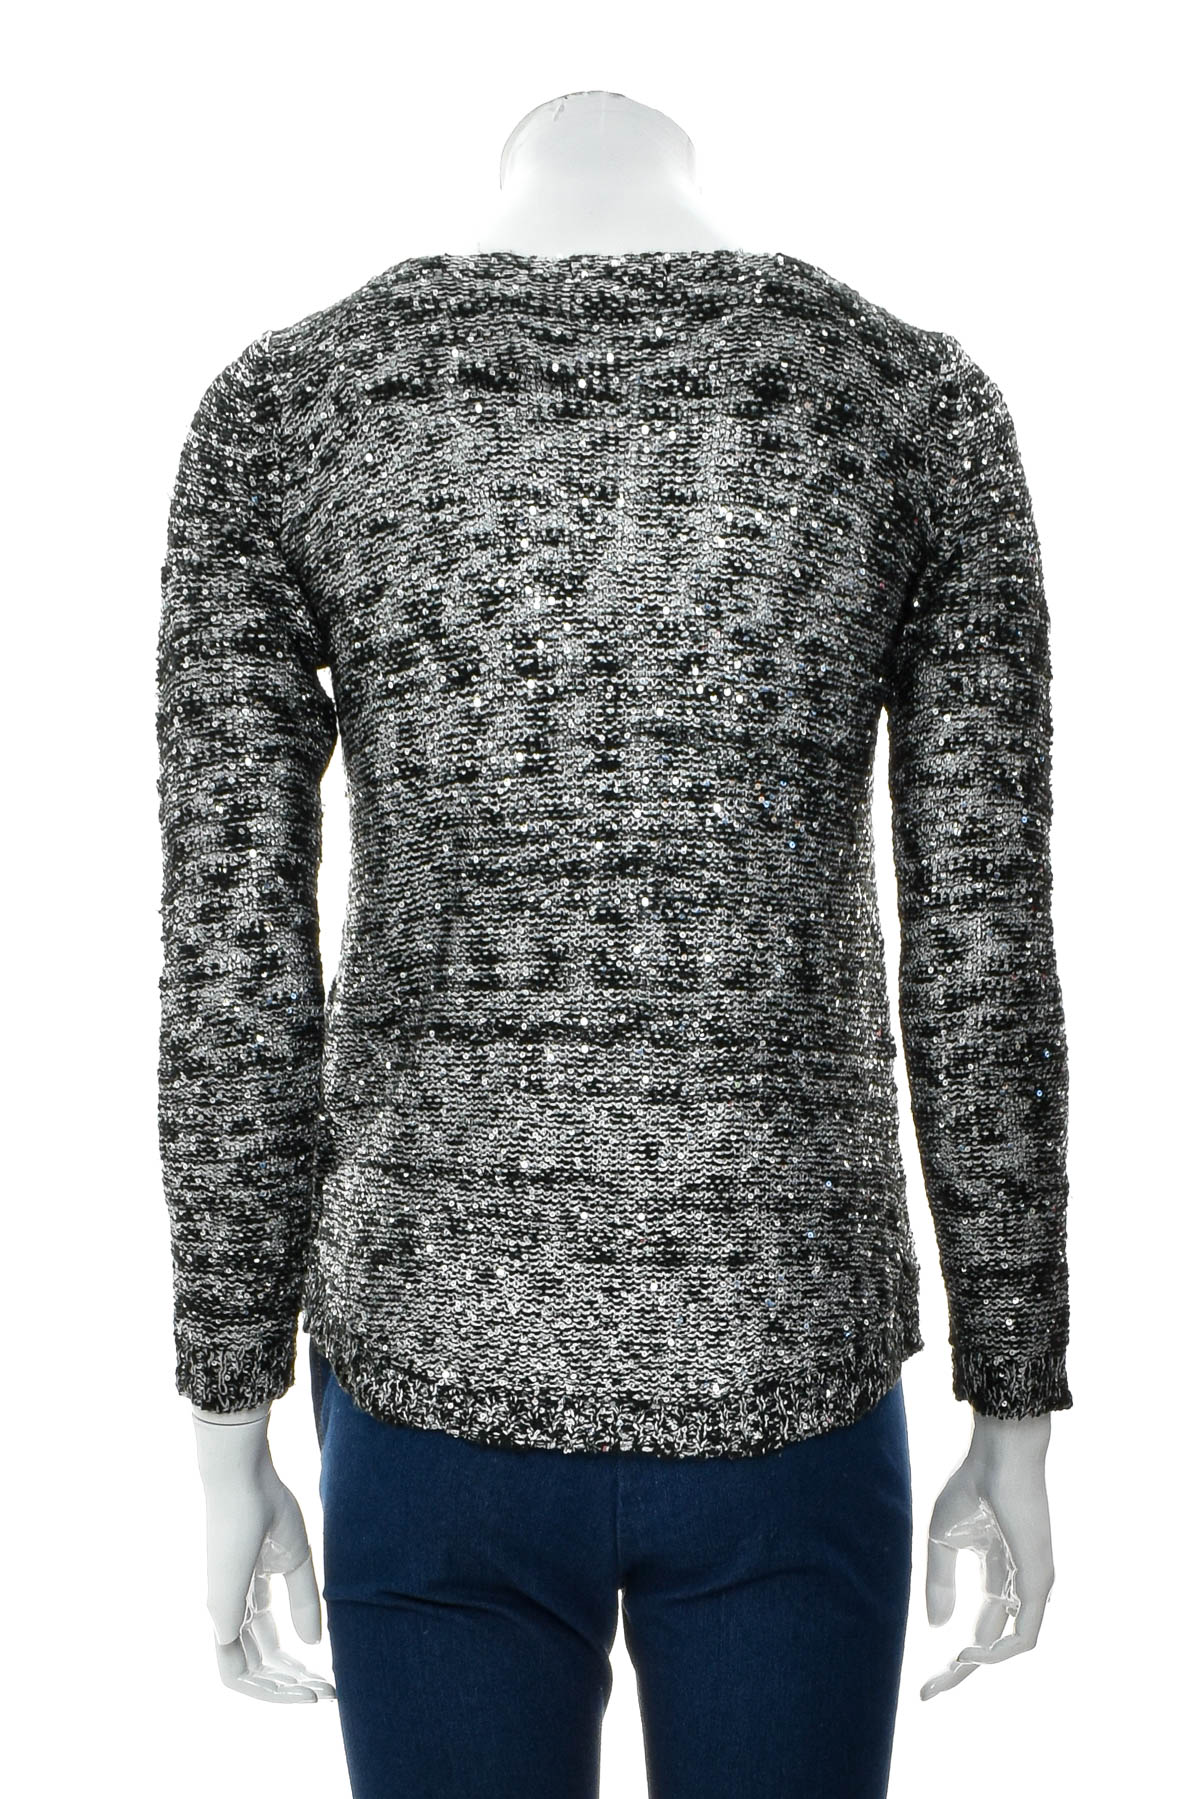 Women's sweater - Alfani - 1